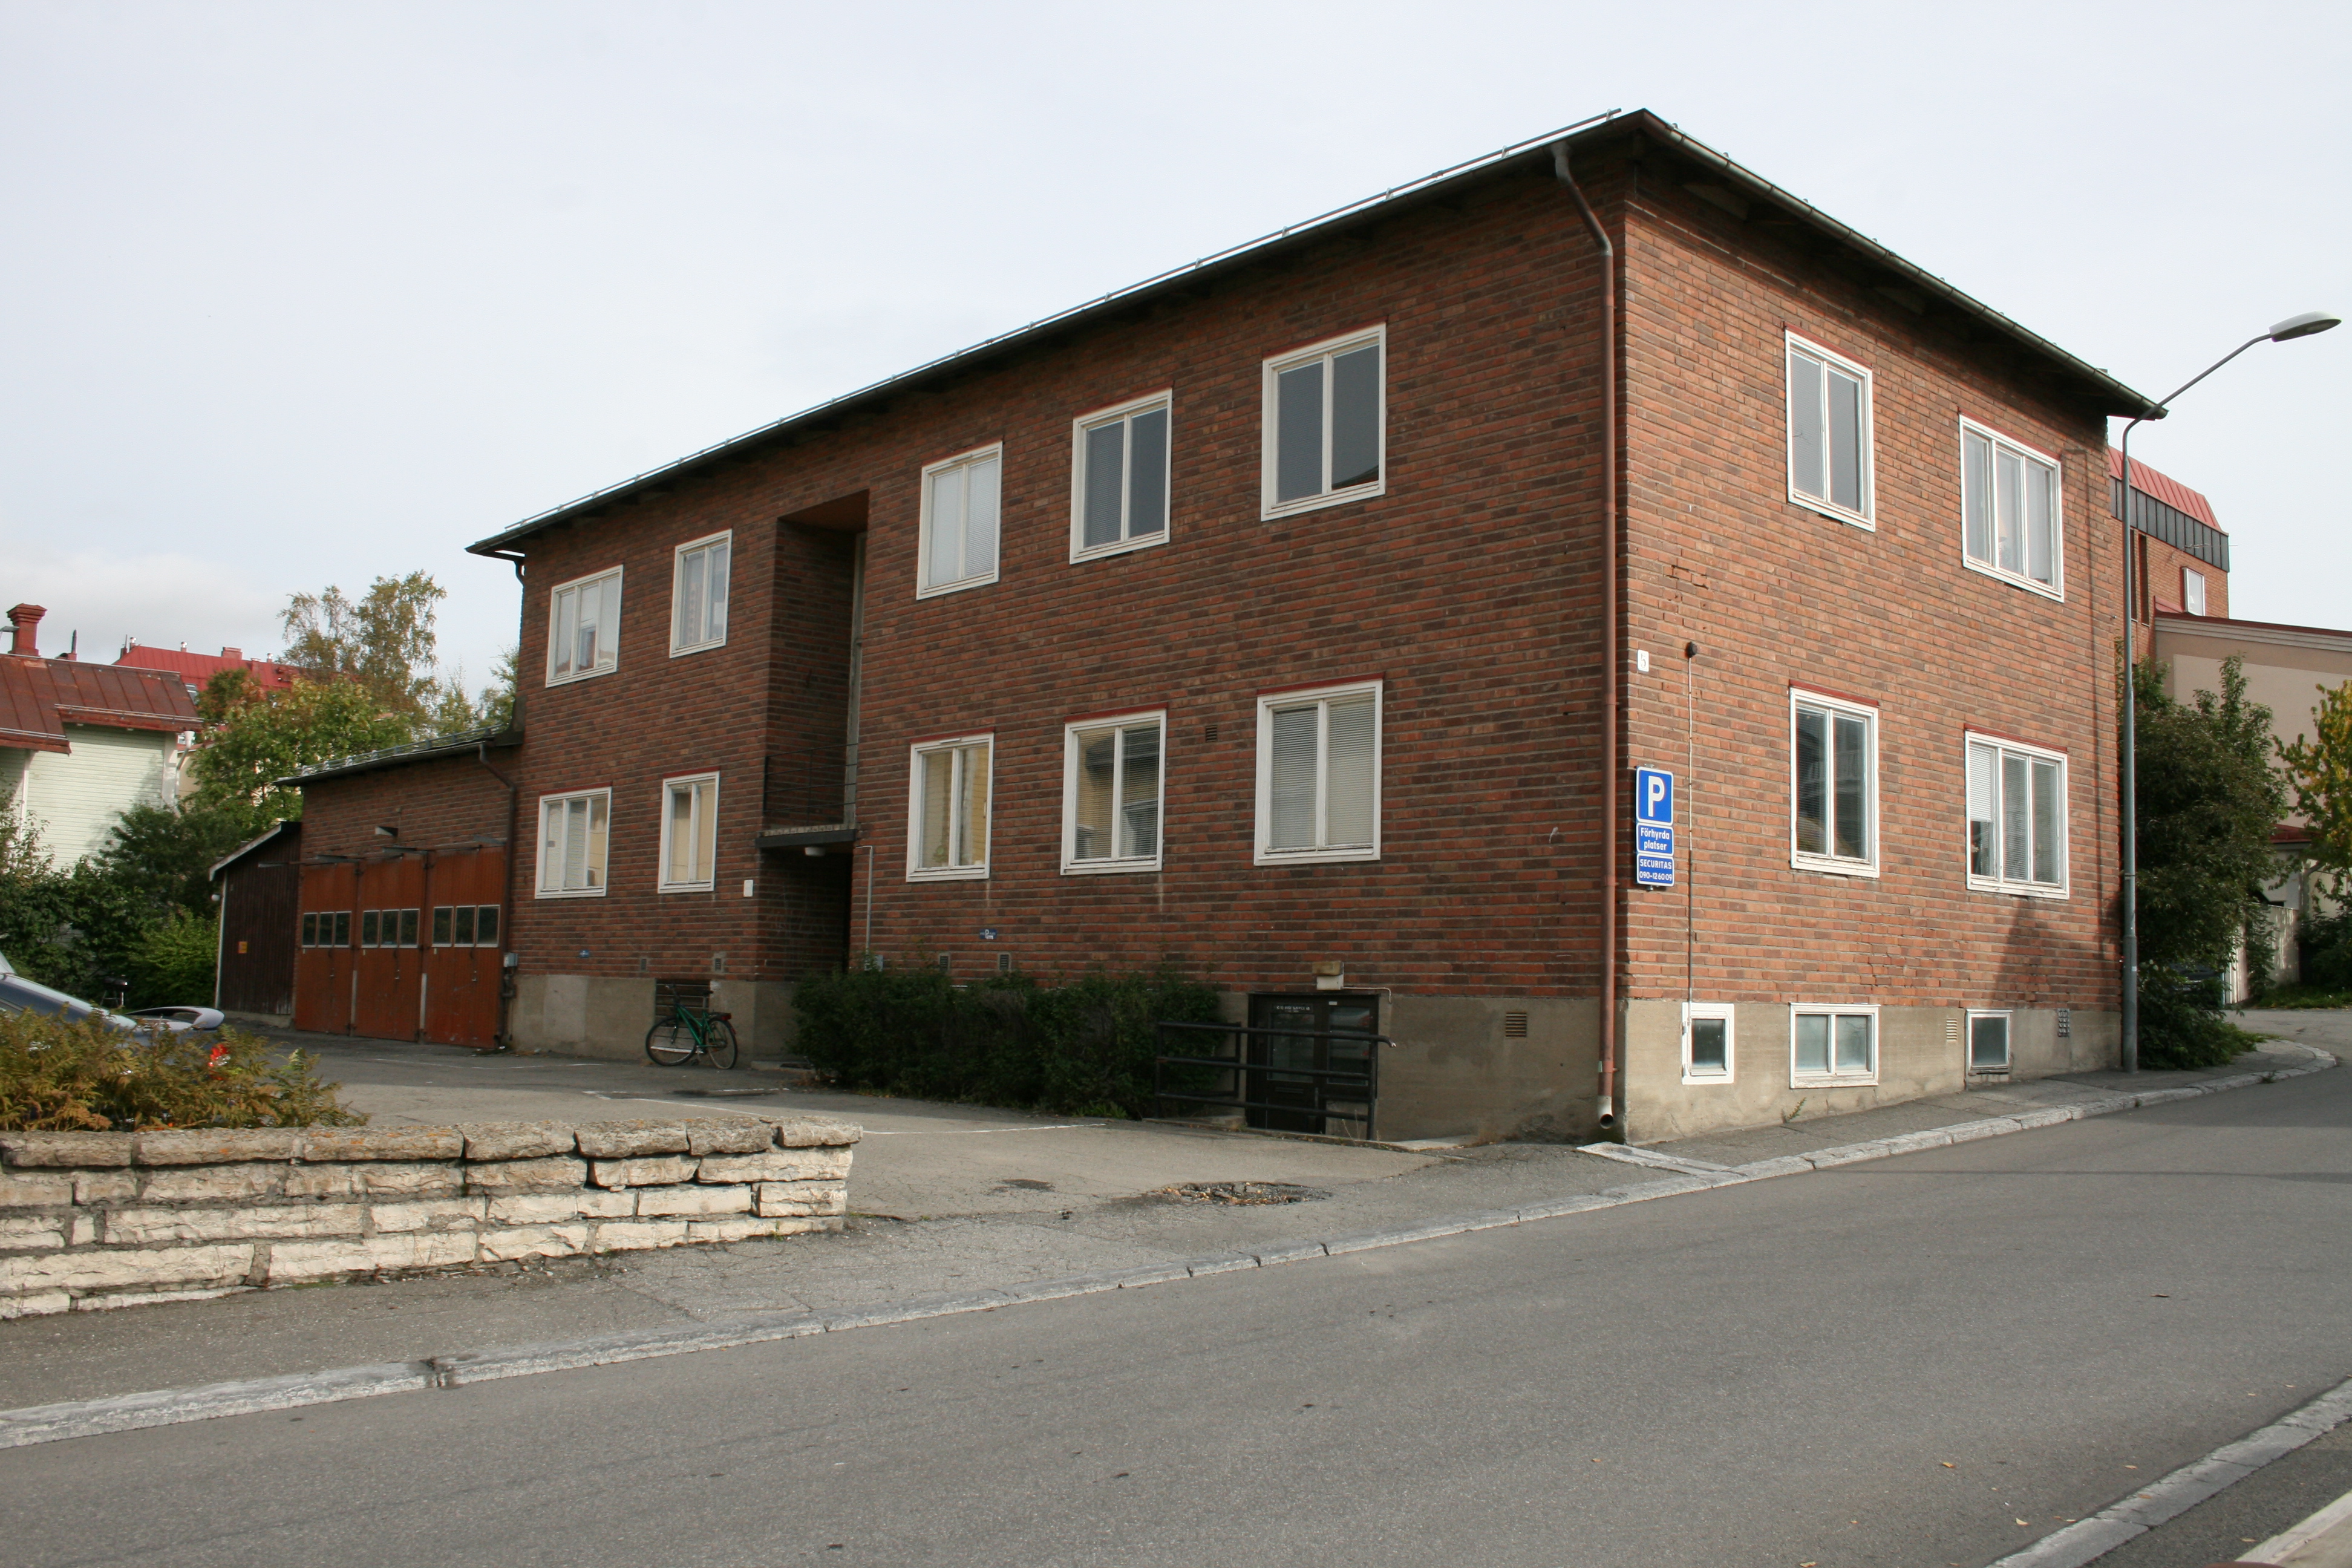 Riksbanken 5, hus 2. Gårdshus med gavel mot Thoméegränd.